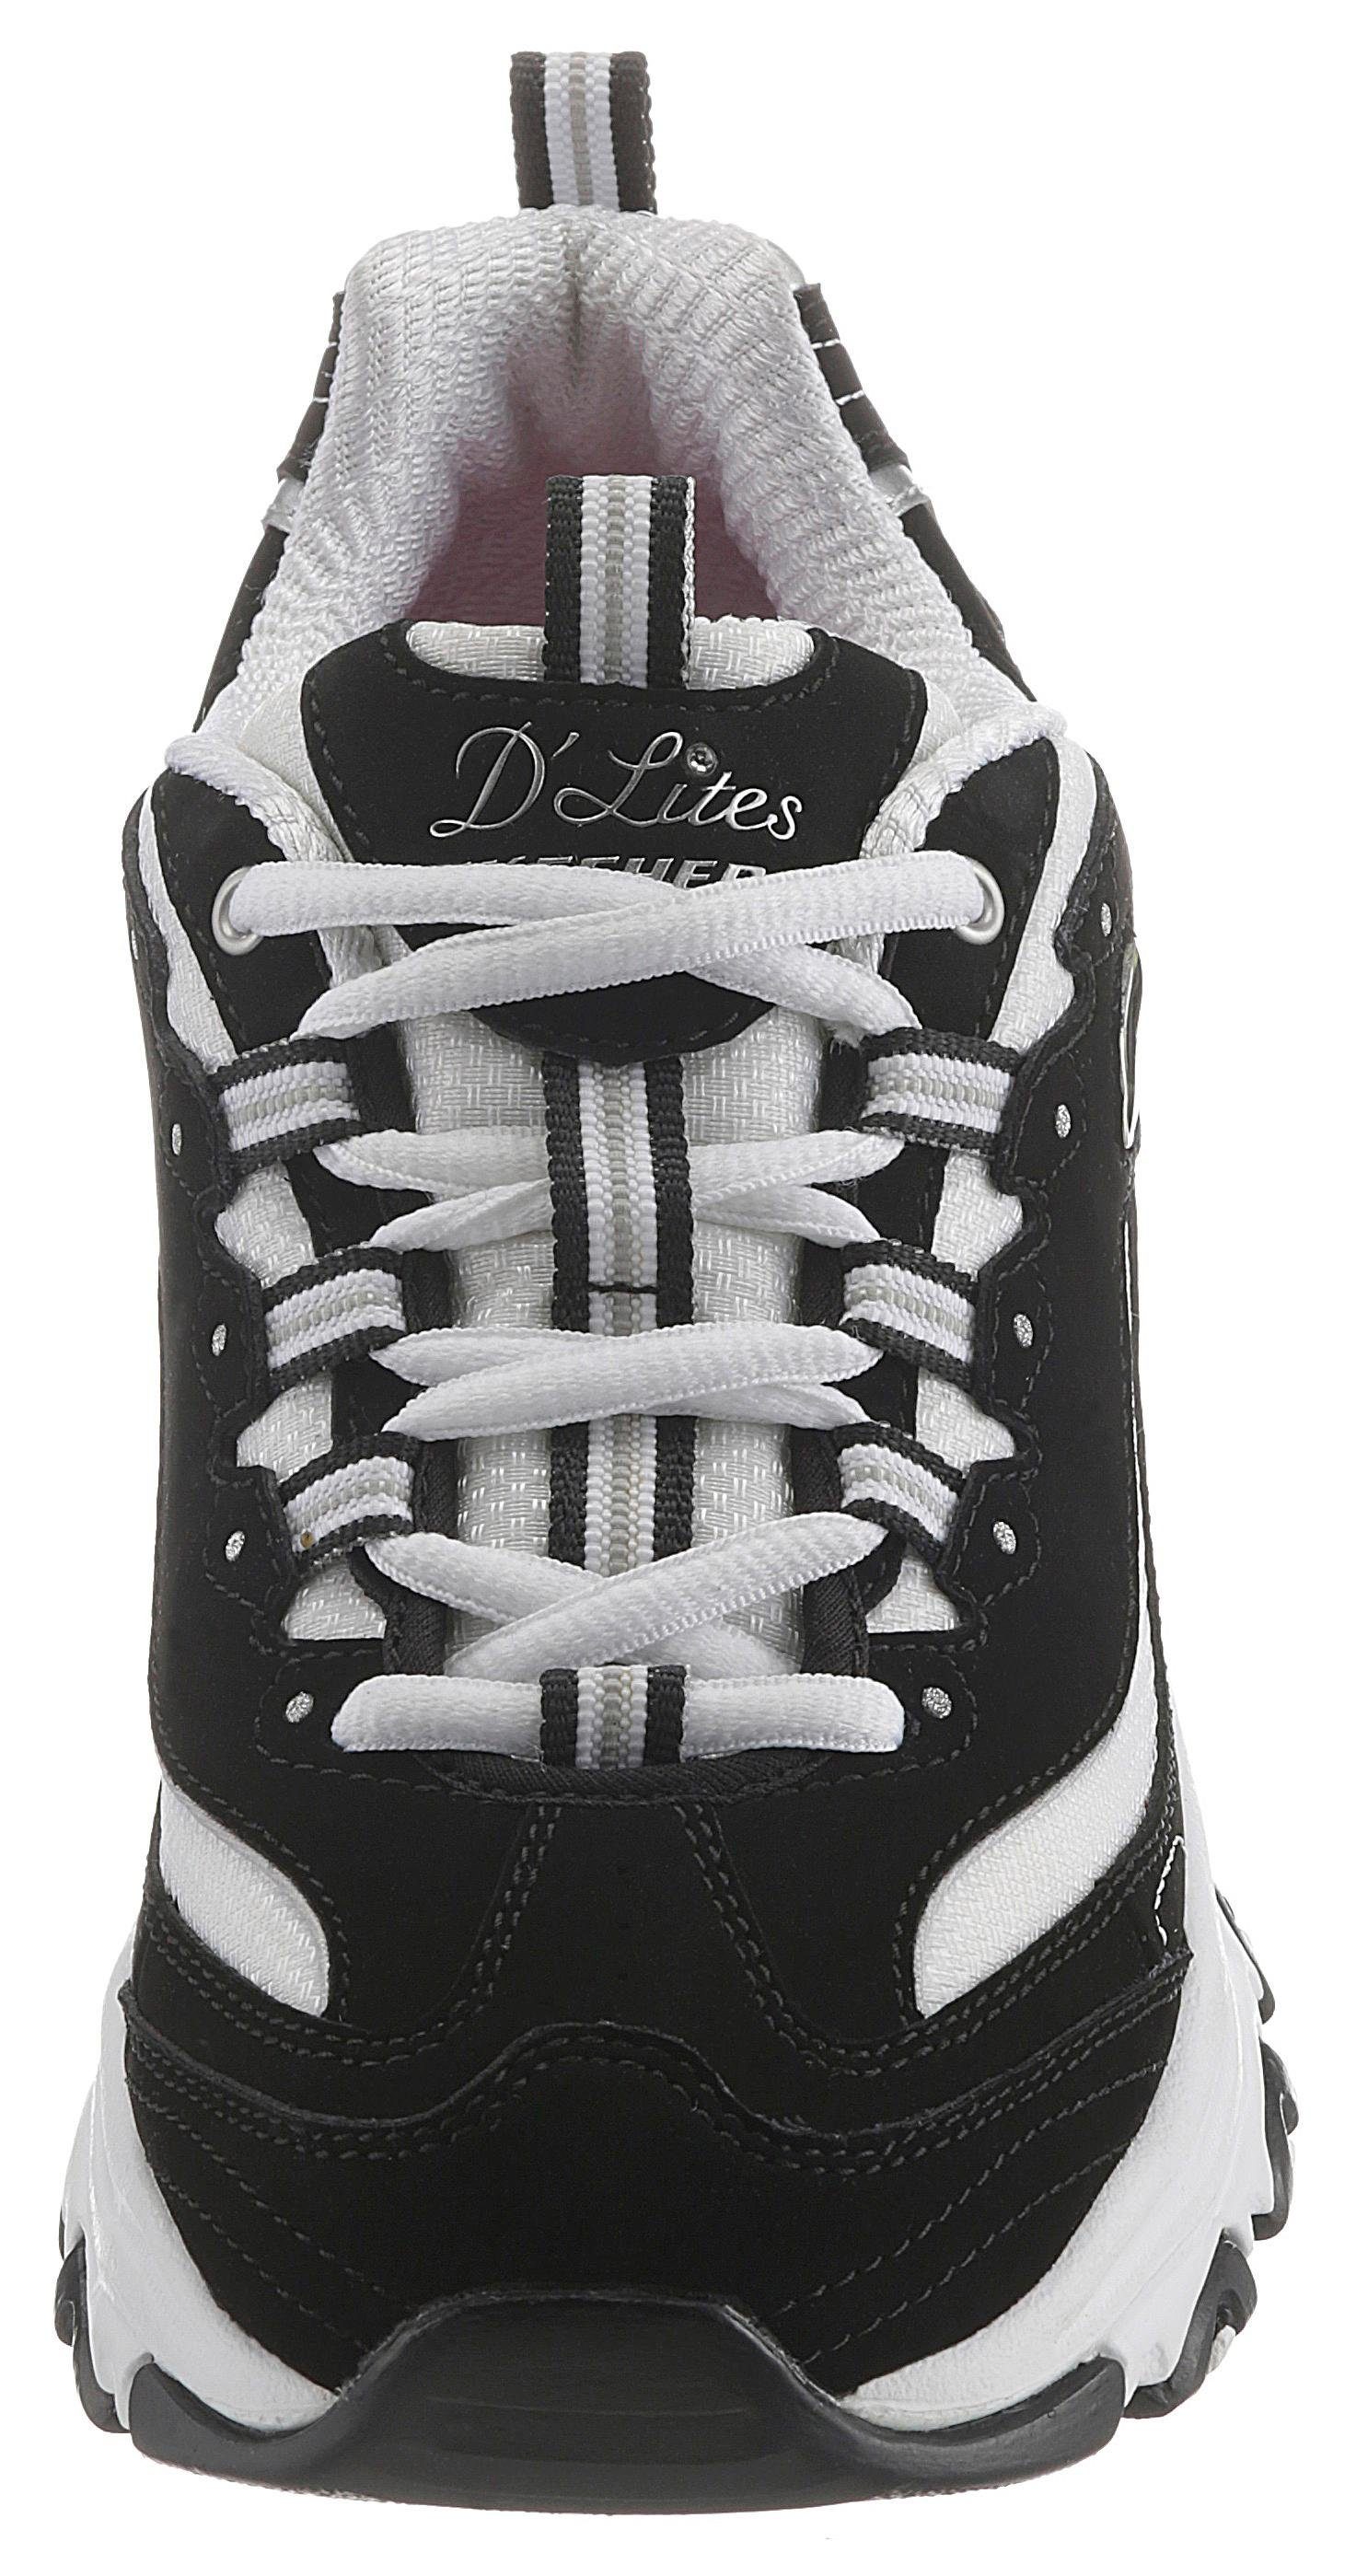 Skechers D´Lites Fan schwarz-weiß Sneaker trendigen Chunky-Style - Biggest im